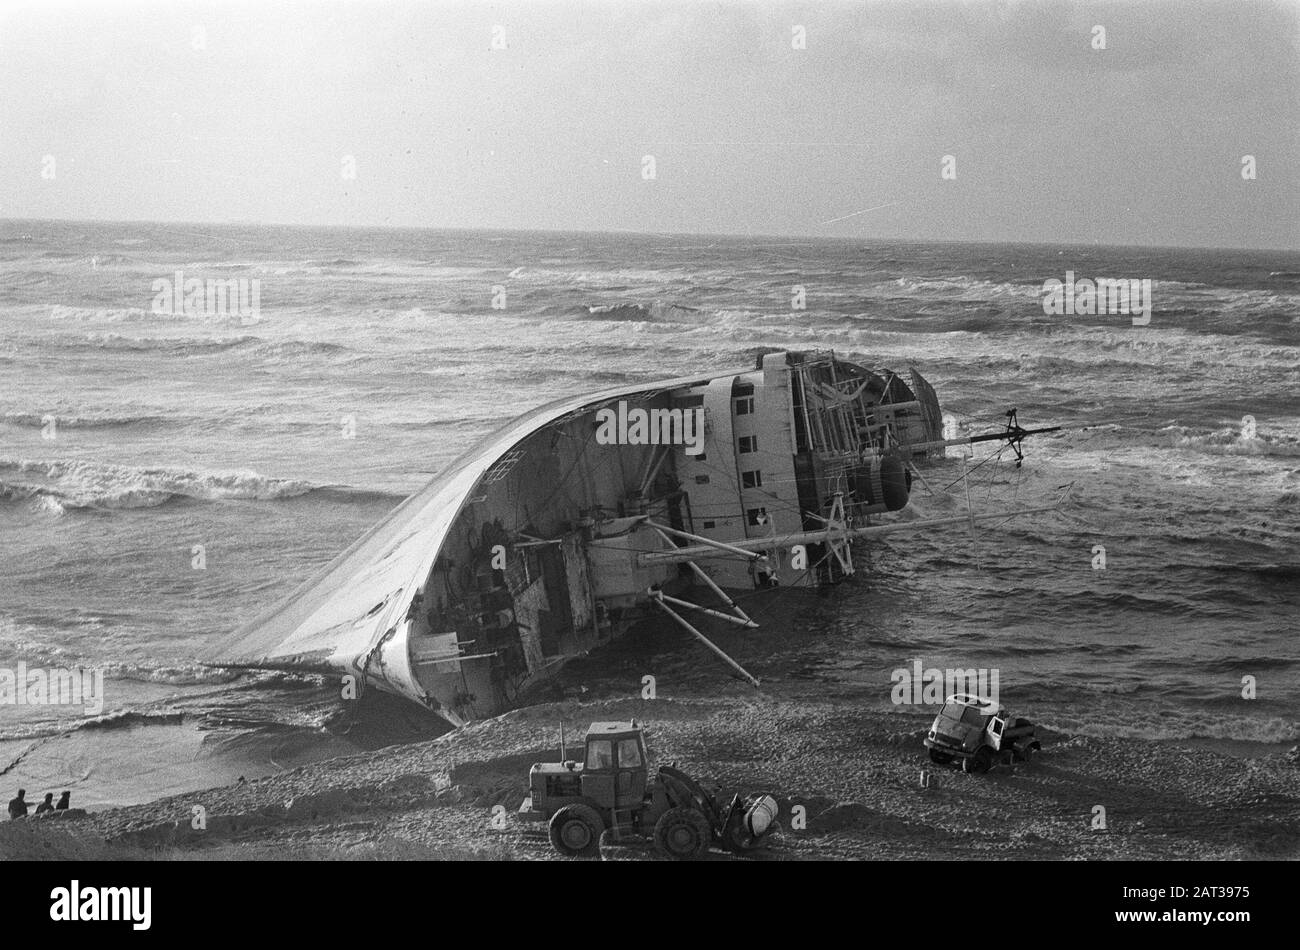 Le navire chinois toronné Wan Chun à Bakkum le navire qui était auparavant bloqué pendant une tempête a chuté Date: 6 novembre 1973 lieu: Bakkum, Noord-Holland mots clés: Navires, échouements Banque D'Images